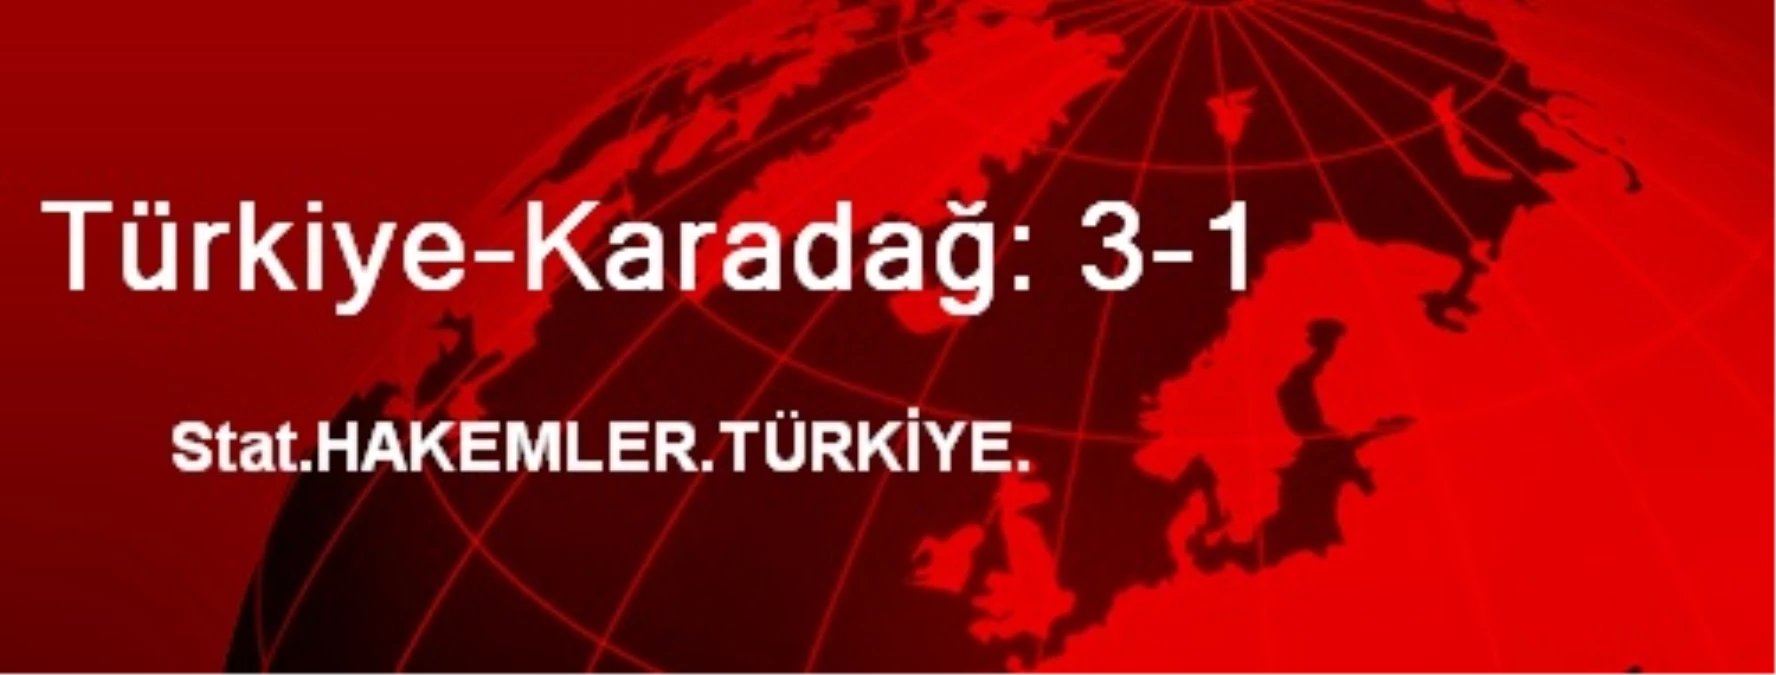 Türkiye-Karadağ: 3-1